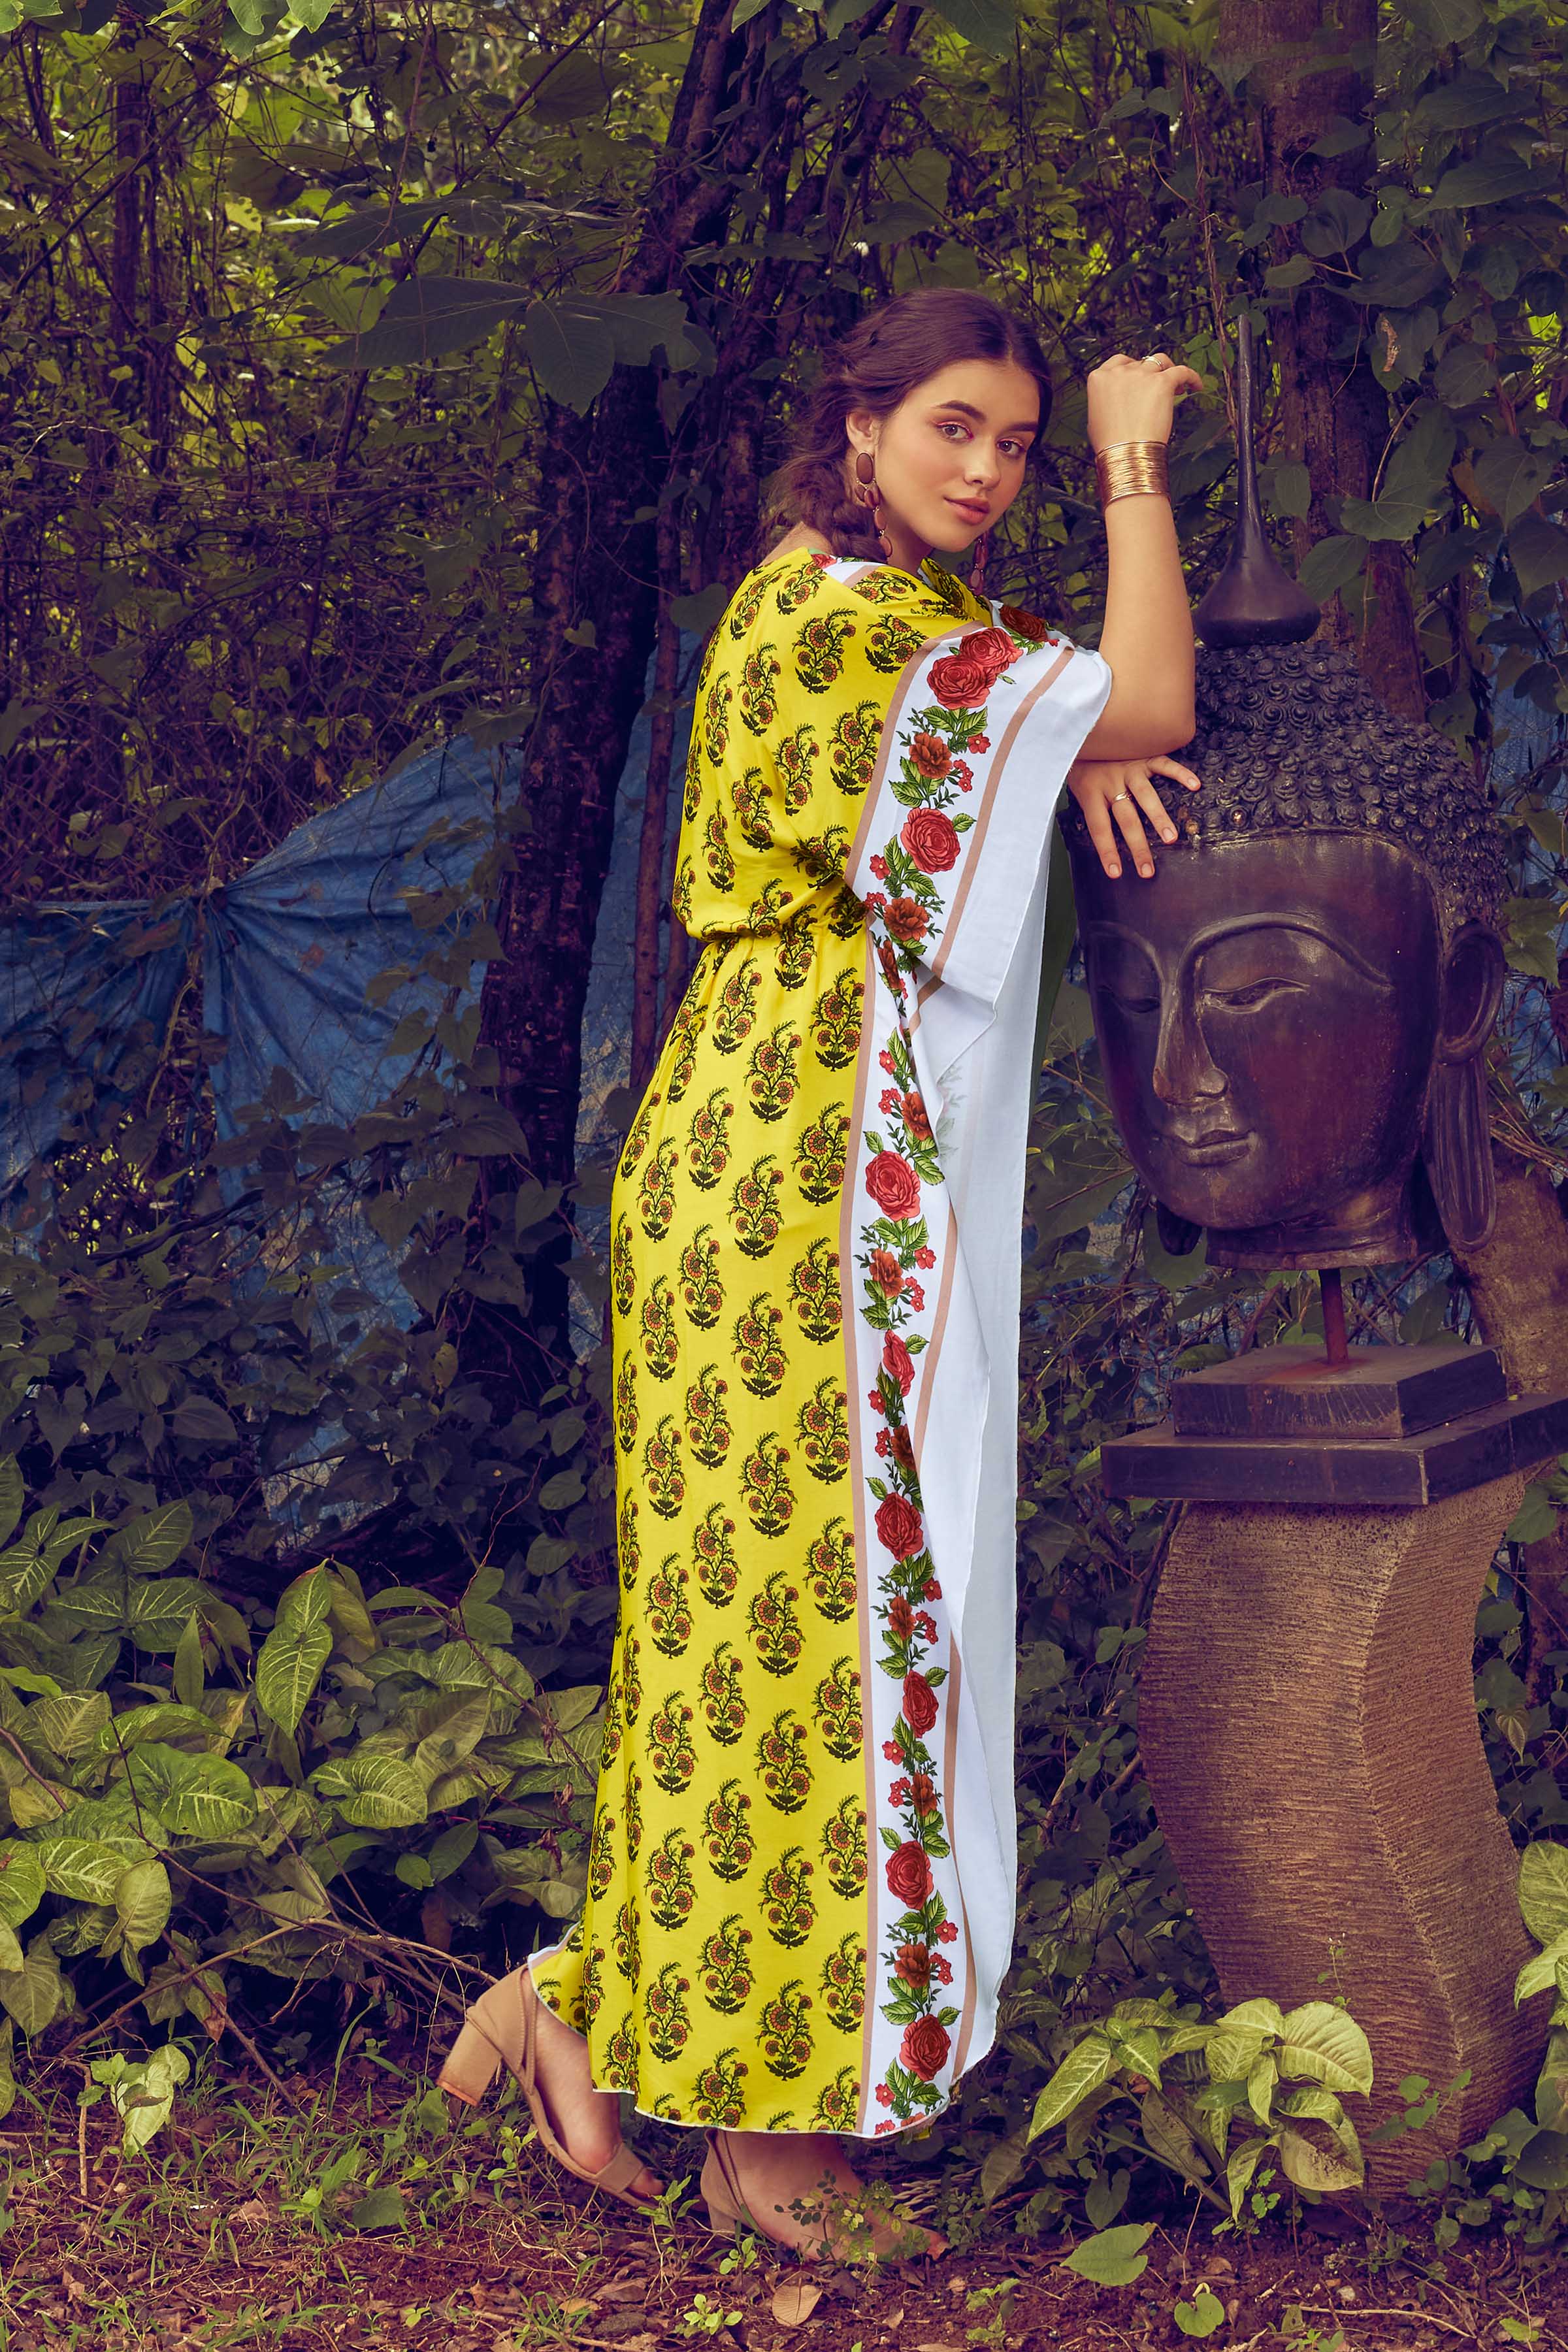 Colorful Printed Kaftan dress